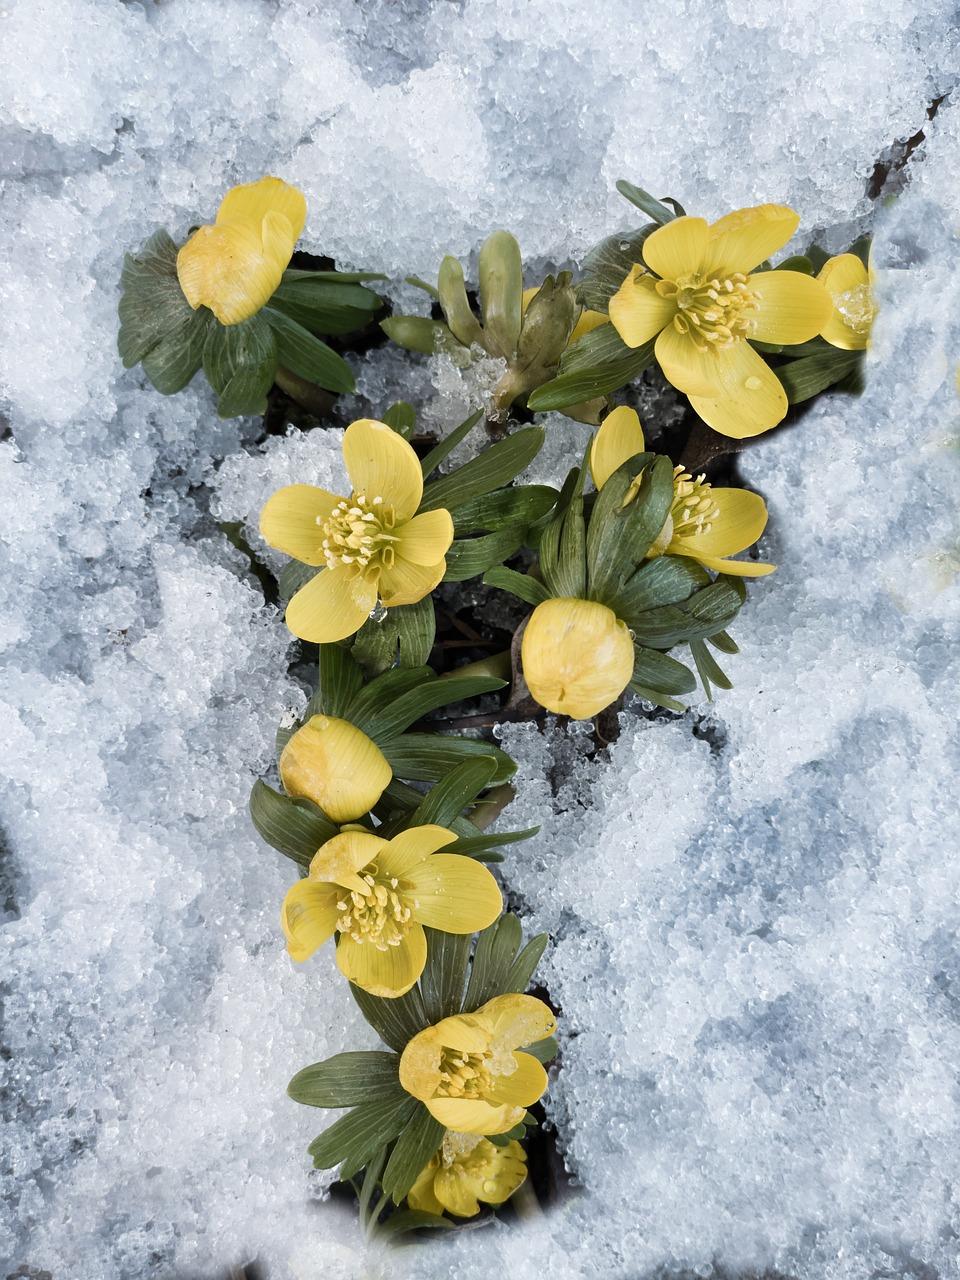 Где достать редкие цветы зимой? : Урал56.Ру. Новости Орска, Оренбурга и  Оренбургской области.